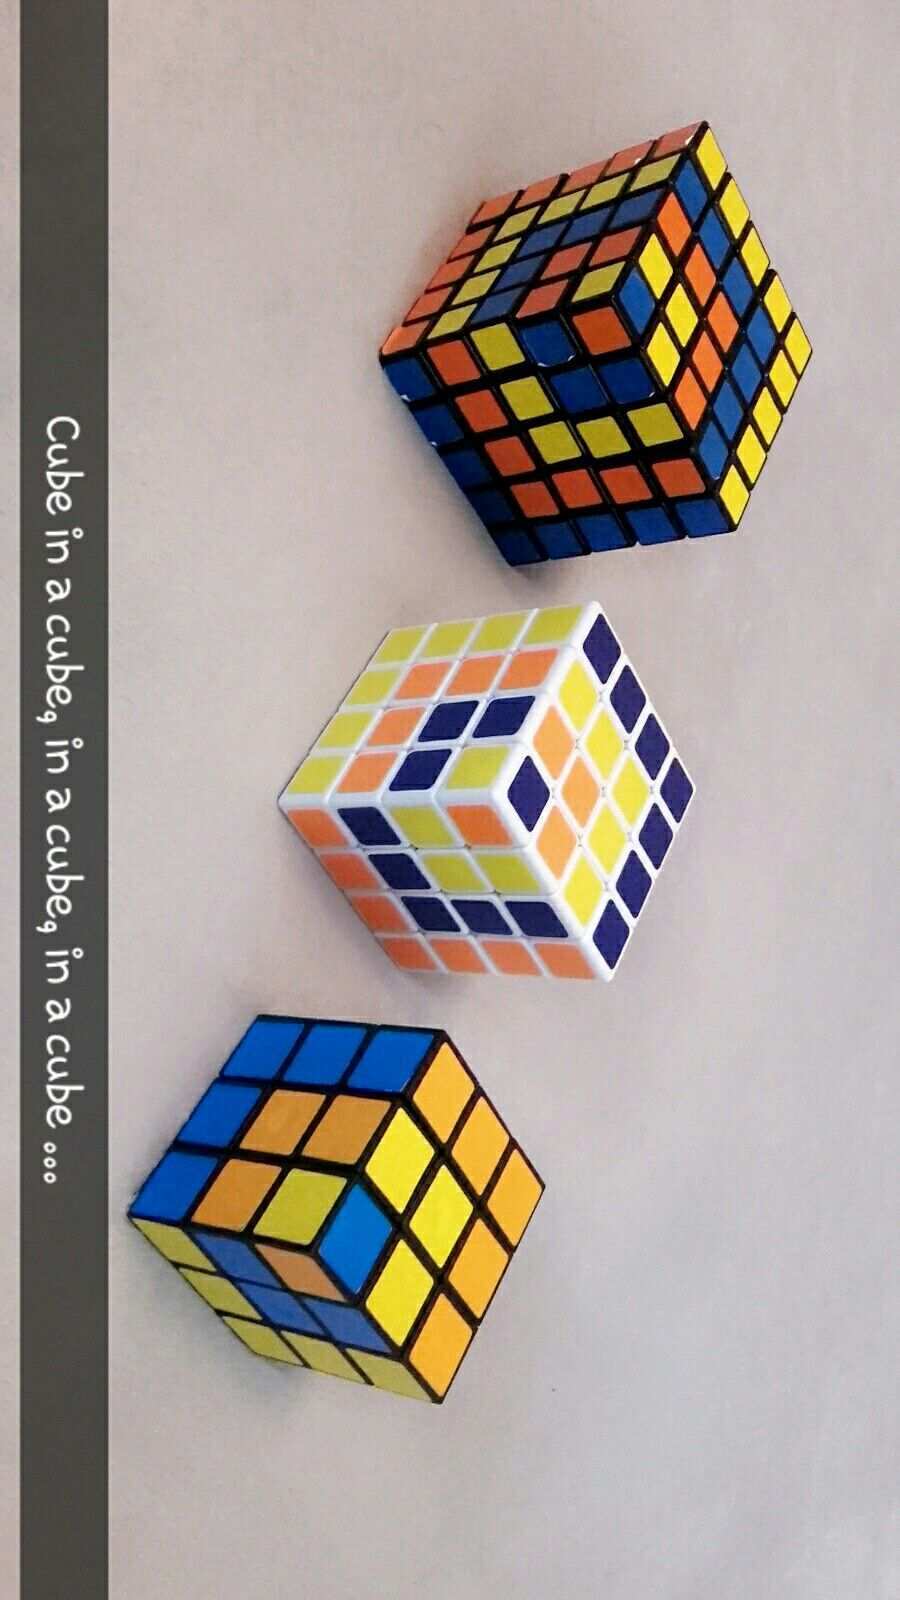 Zauberwurfel Rubiks Cube Coole Muster Mit 3 3 3 4 4 4 5 5 5 Cube In A Cube Rubix Cube Rubiks Cube Cube Puzzle